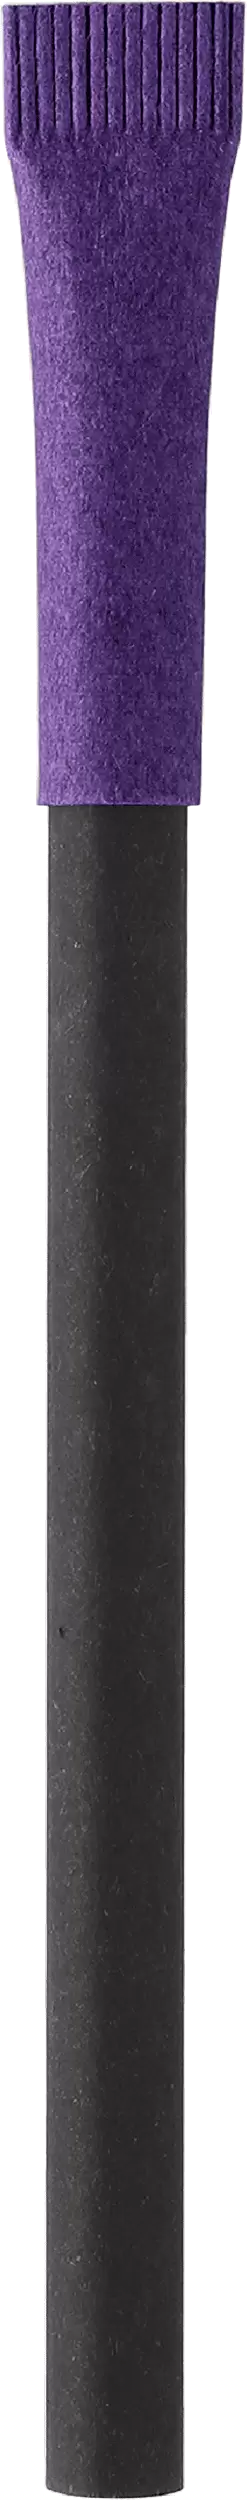 Ручка KRAFT MIX Черная с фиолетовым 3011-08-11